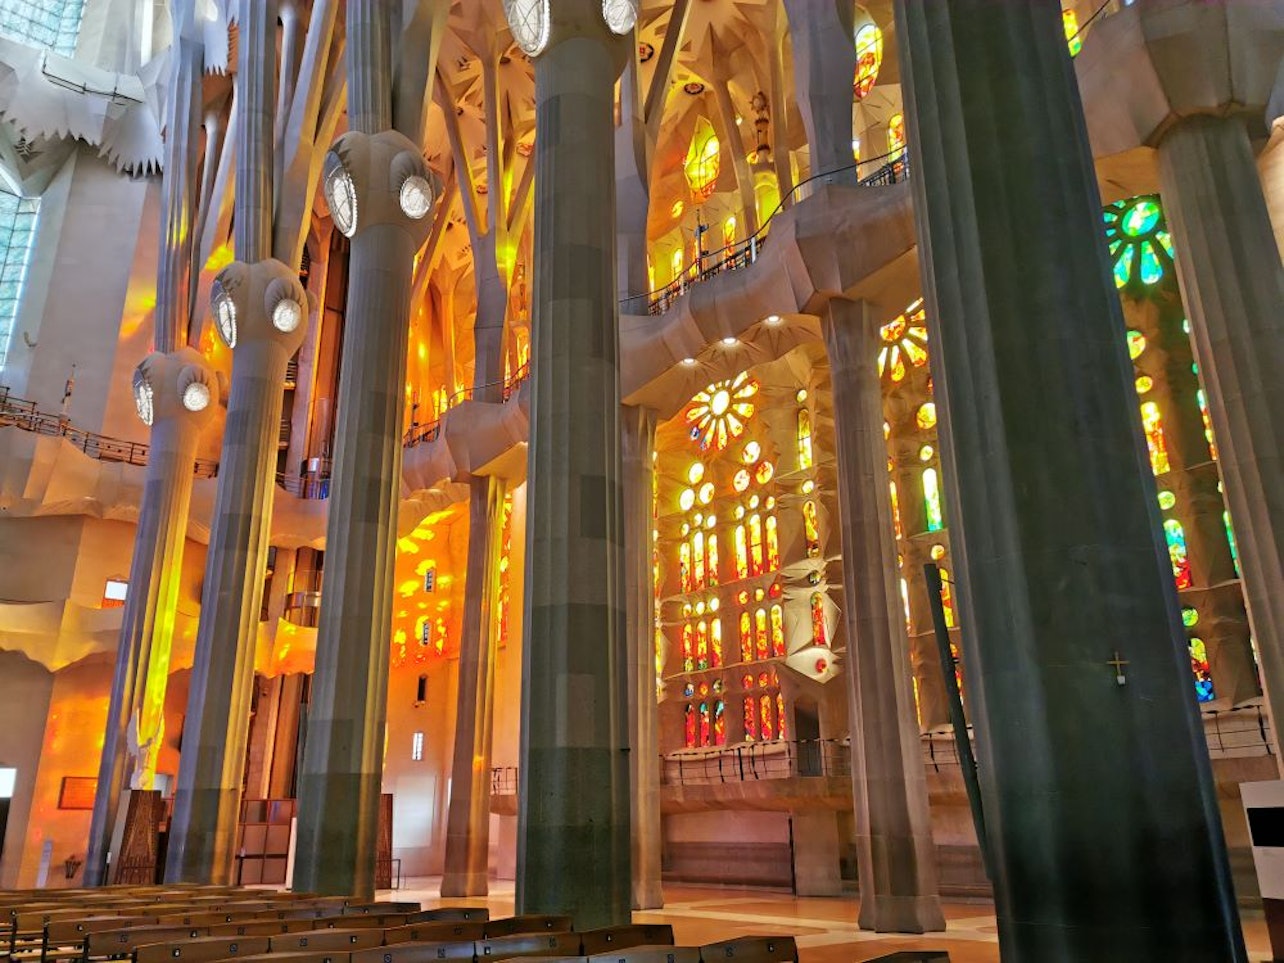 Go With A Local: Passeio sem fila pela Sagrada Família em italiano - Acomodações em Barcelona